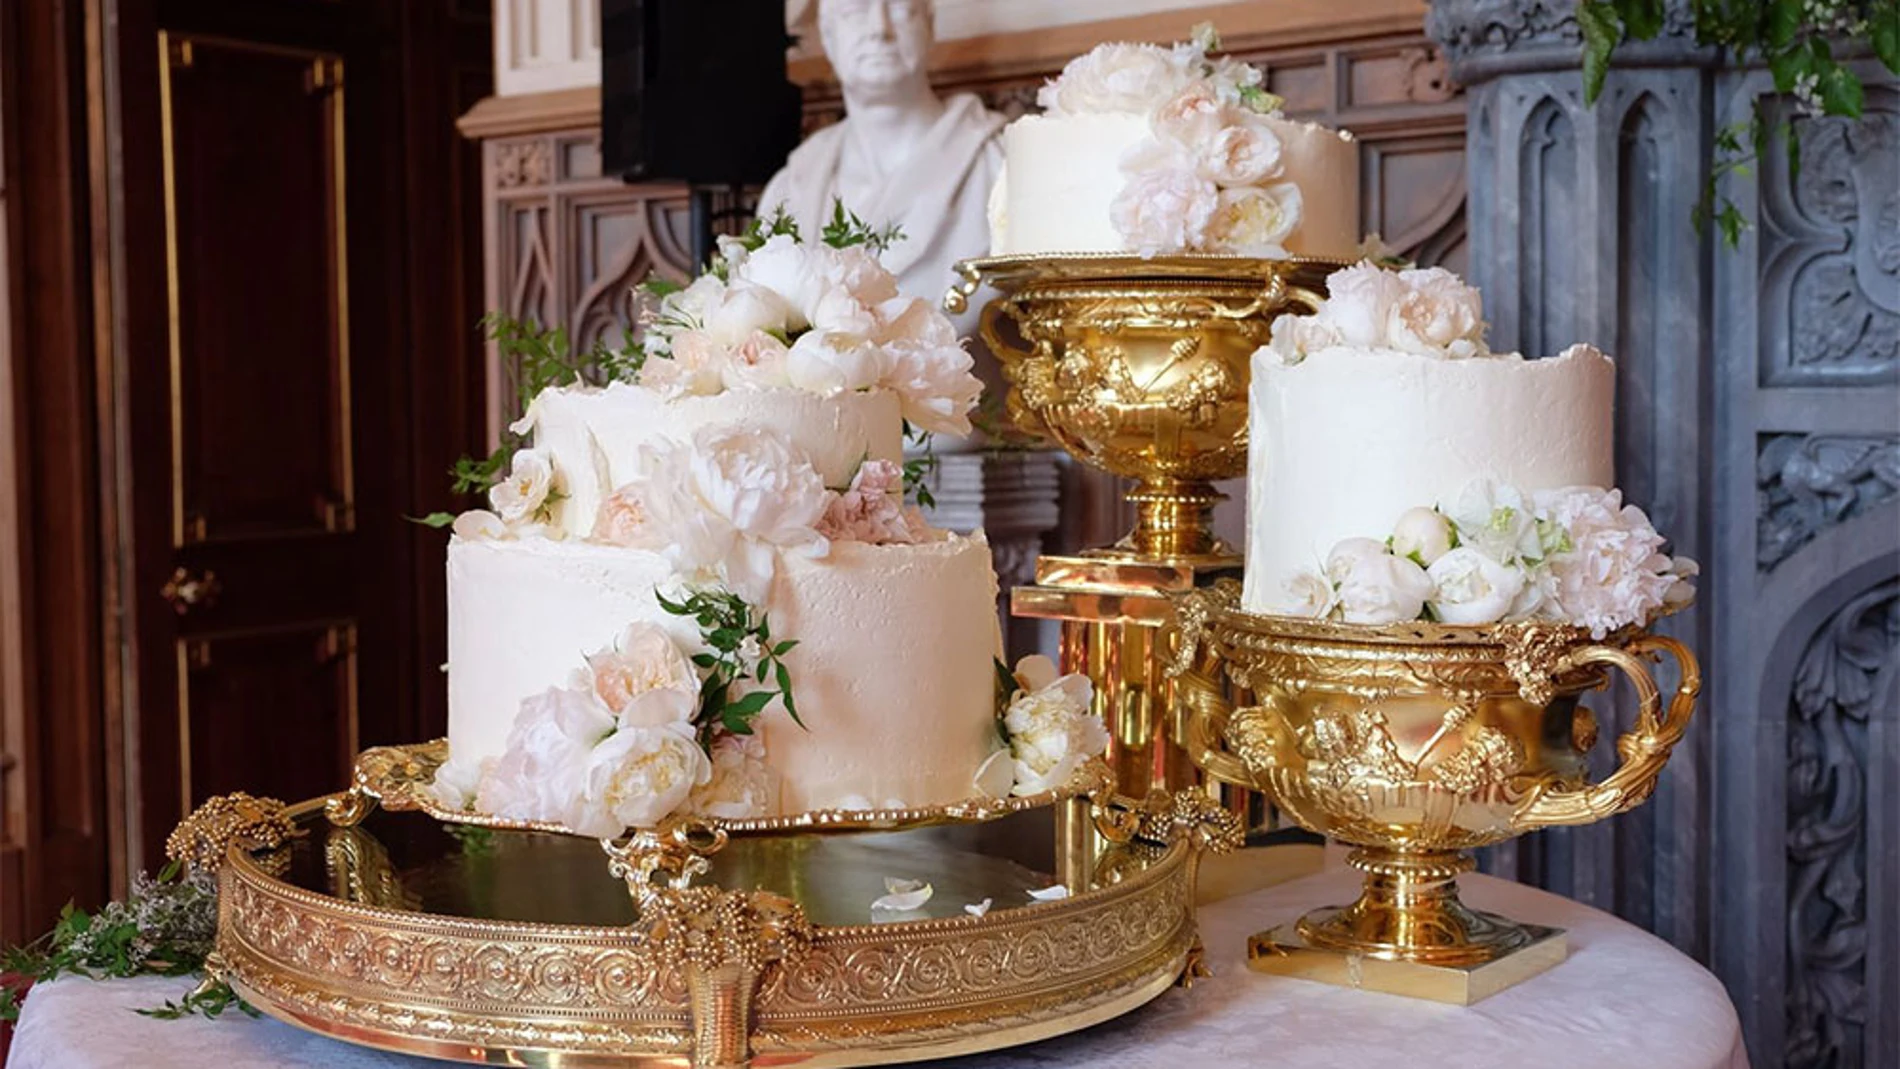 Imagen de la tarta nupcial que ha difundido este sábado el palacio de Kensington